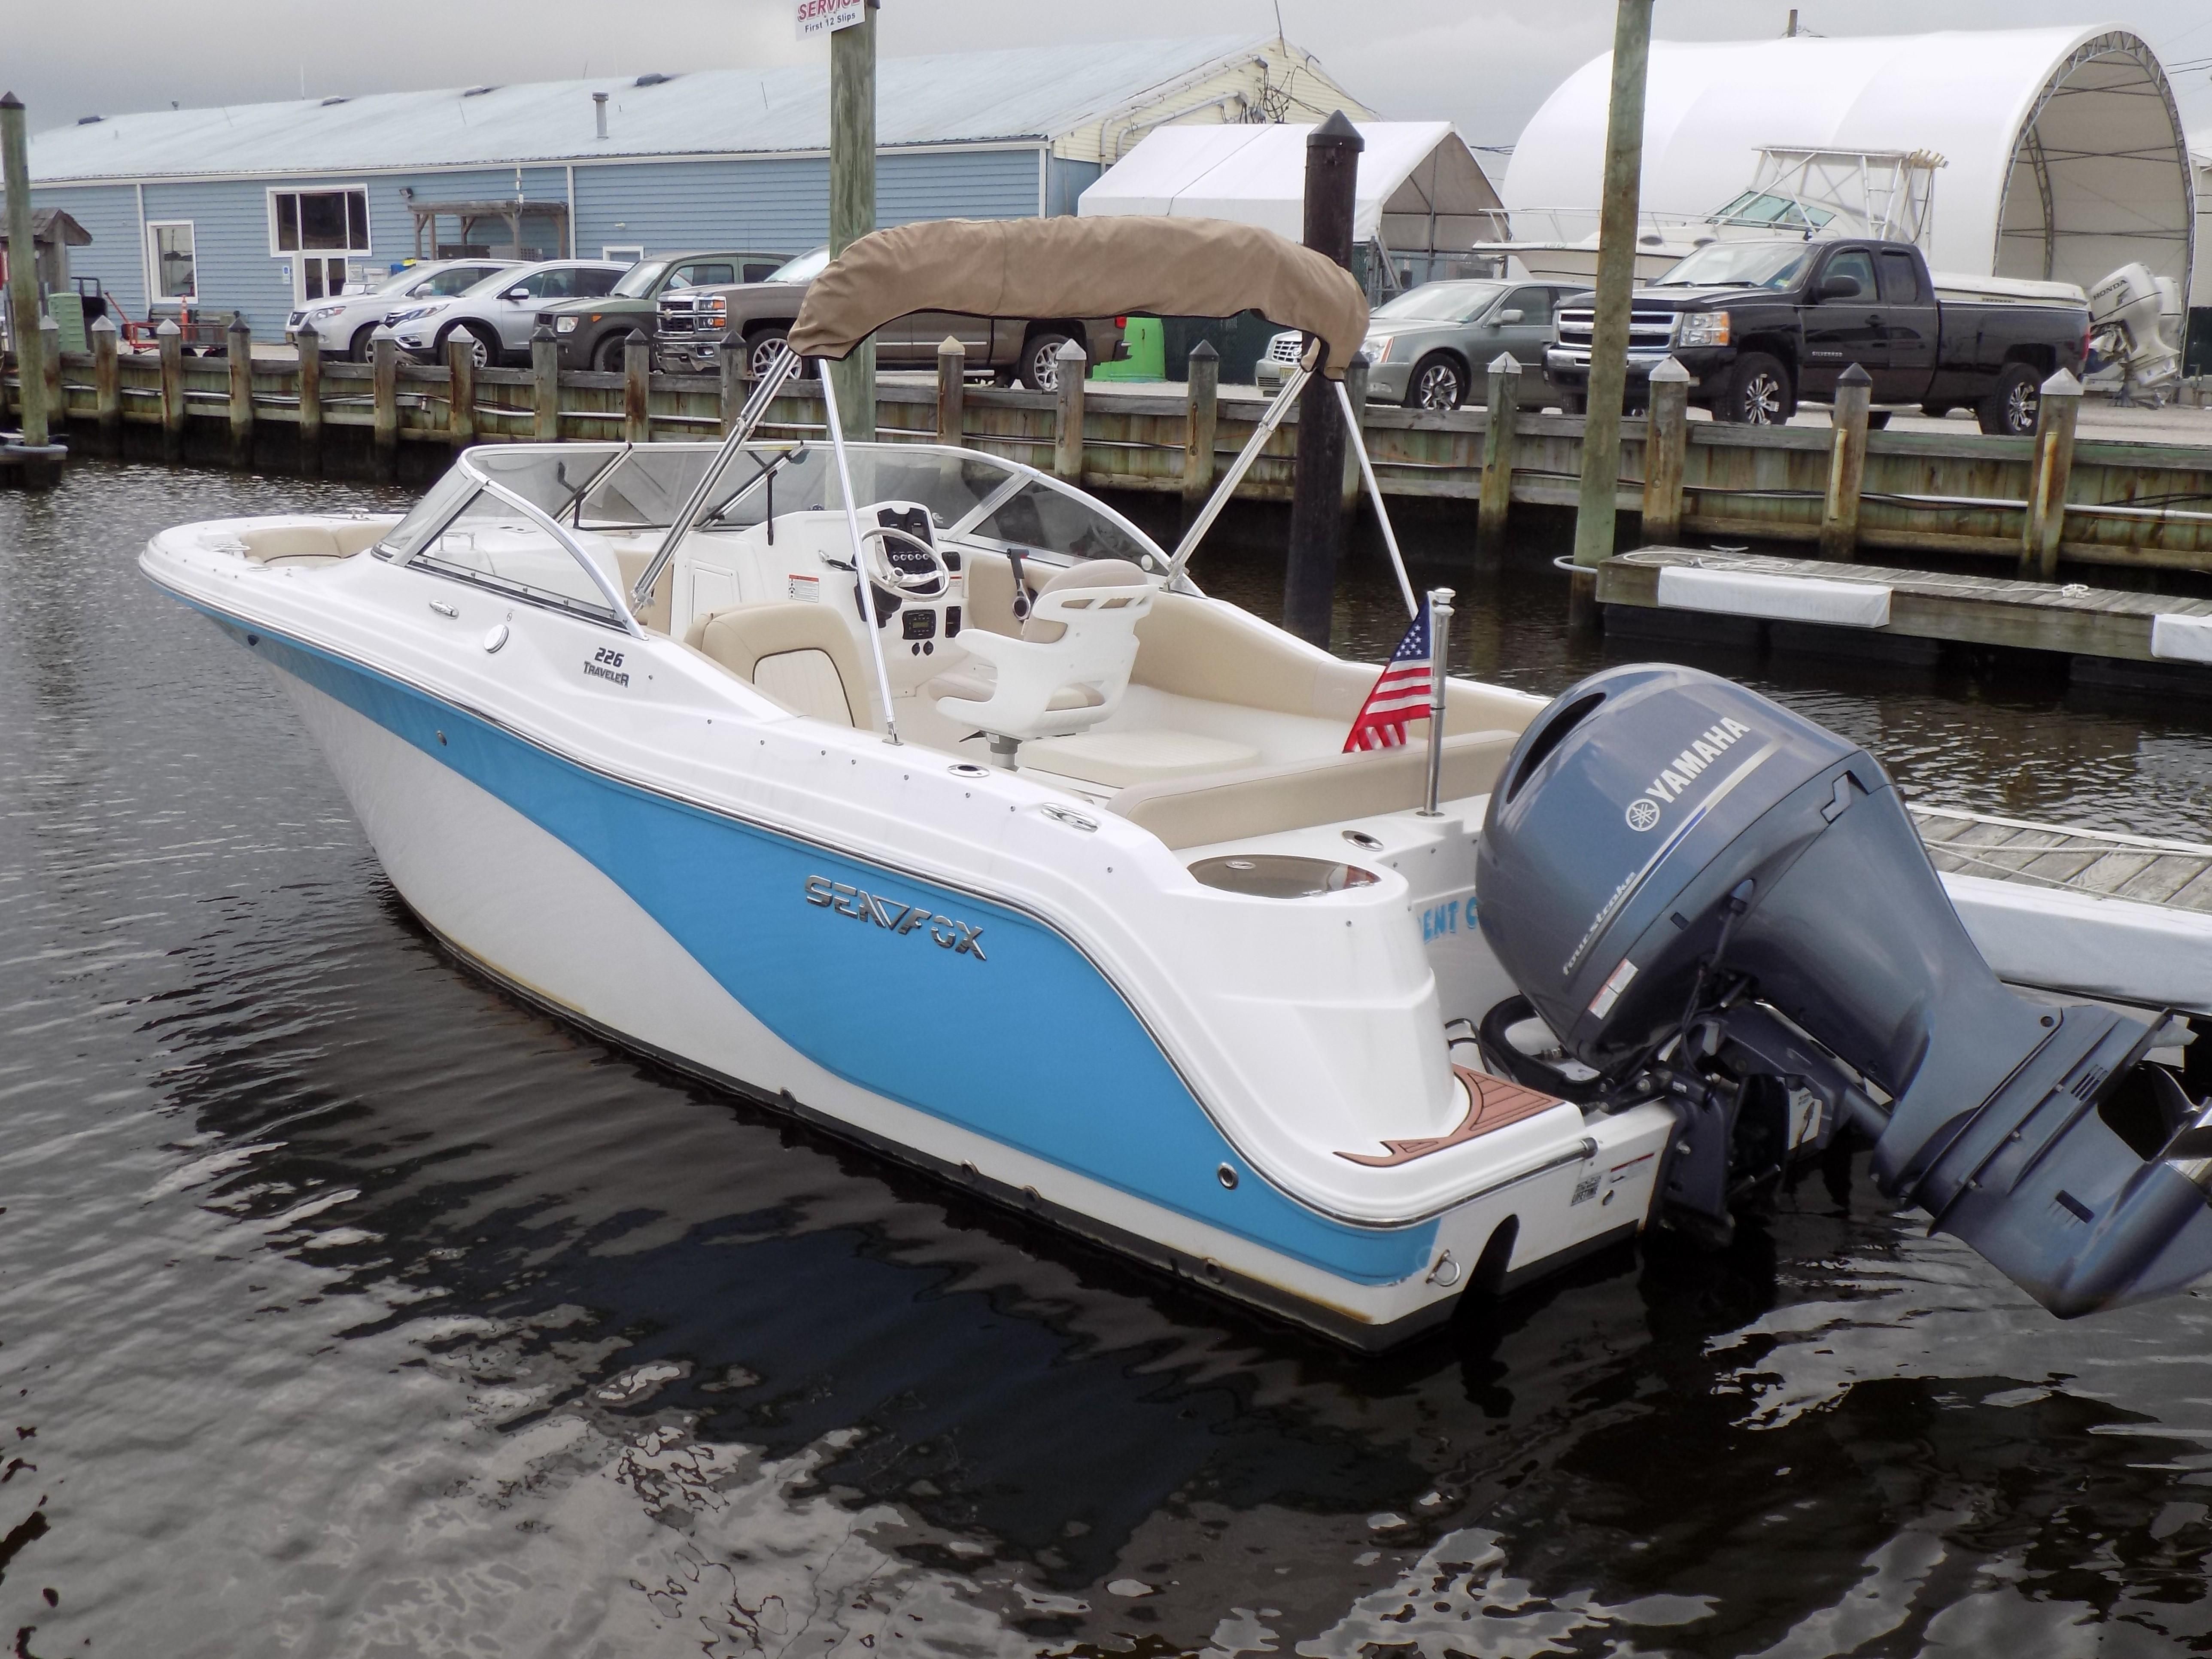 2015 Sea Fox 226 Traveler Power Boat For Sale www